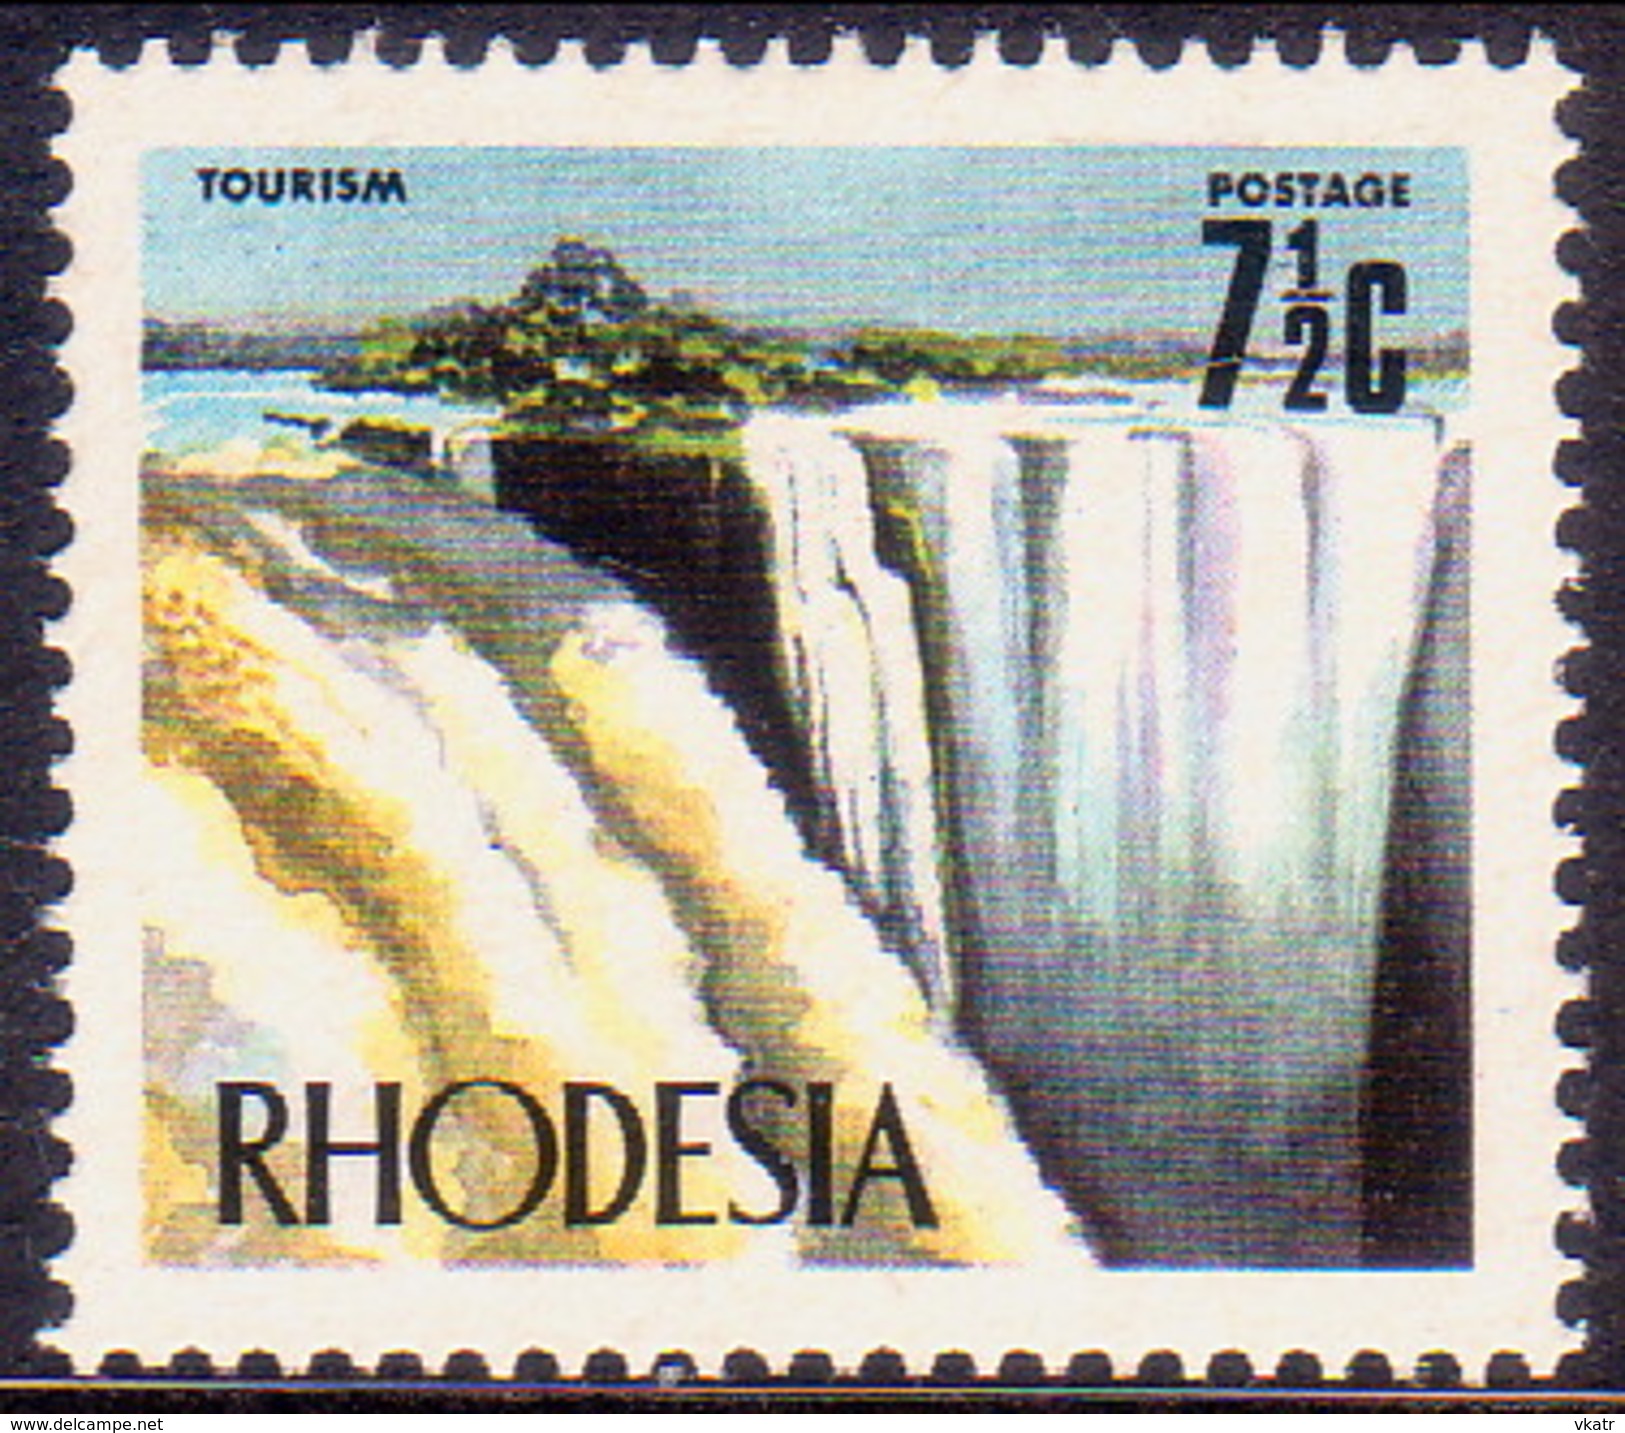 RHODESIA 1973 SG #443c 7½c MNH Victoria Falls - Rhodesia (1964-1980)